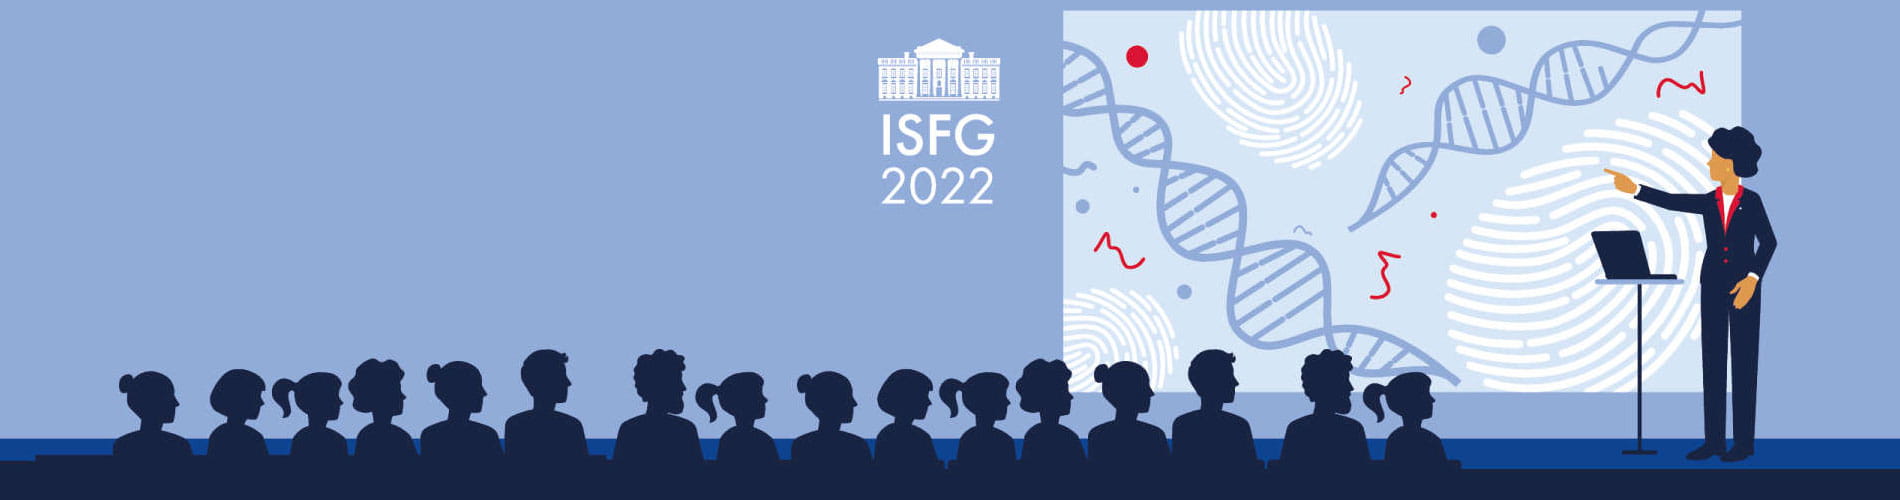 isfg 2022 illustration